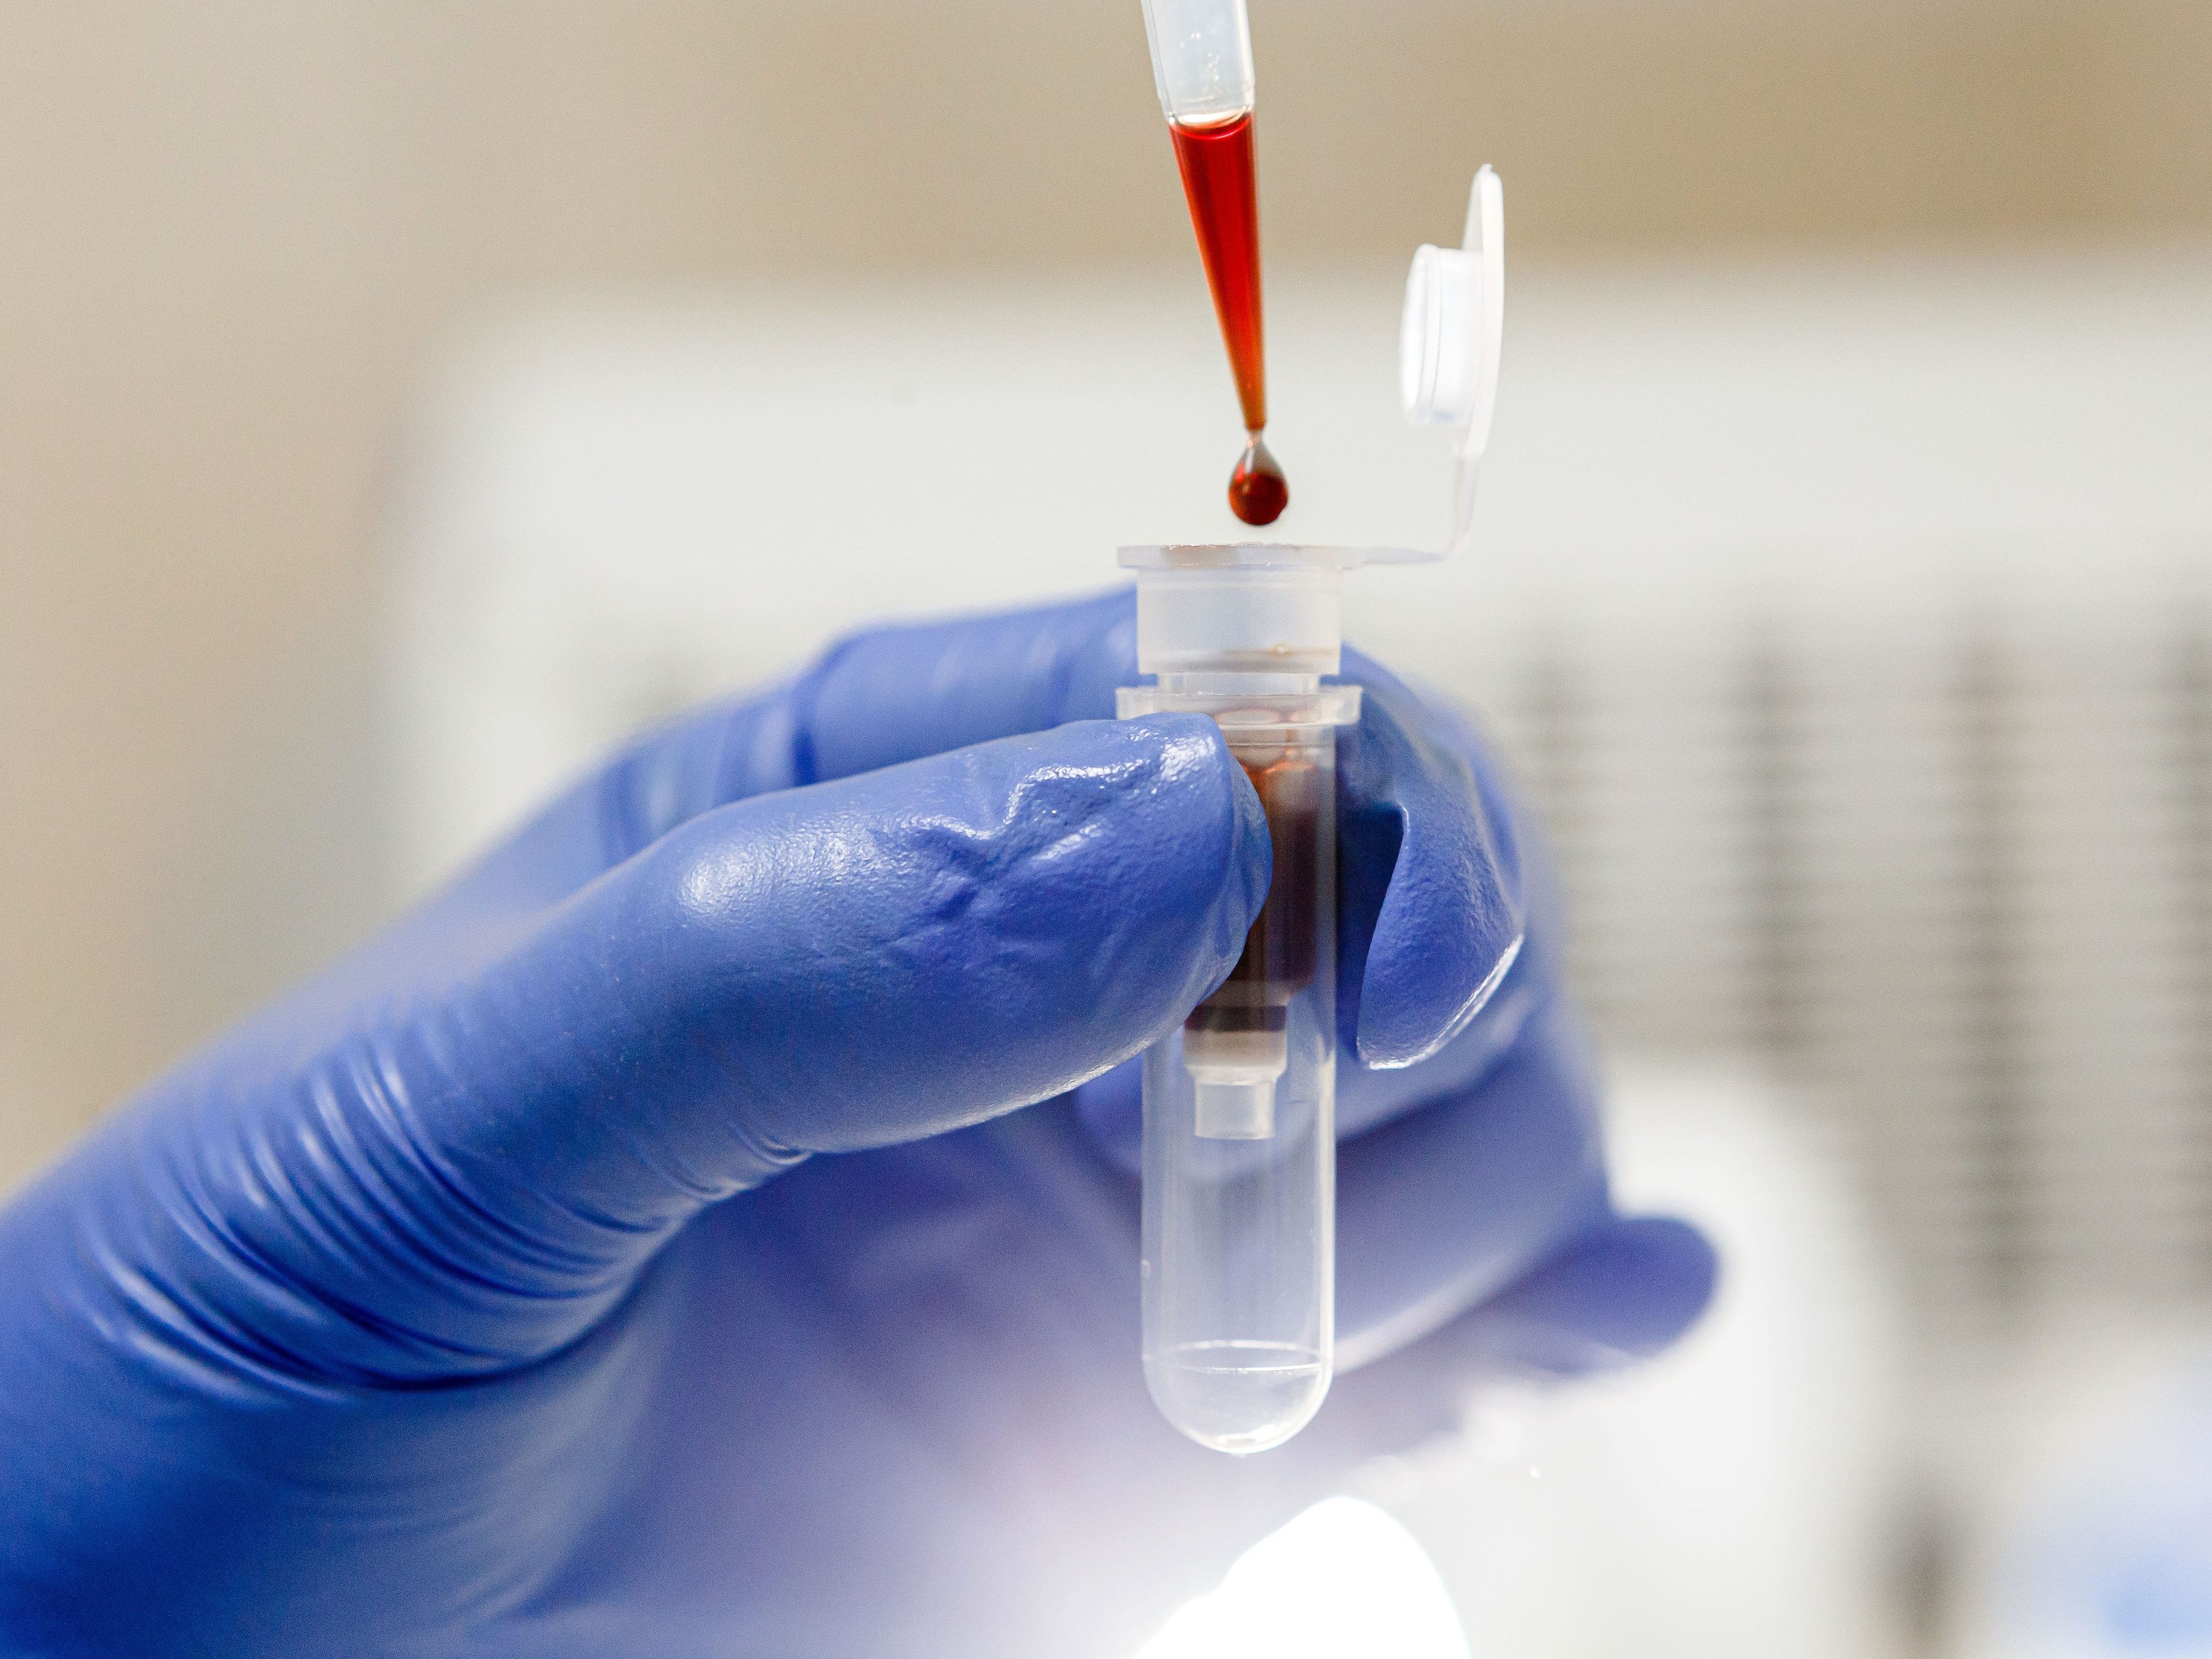 Un científico gotea sangre en un tubo de ensayo. Grail, que está siendo adquirida por el gigante de la secuenciación genética Illumina, planea lanzar en Estados Unidos una prueba de detección de cáncer basada en la sangre en 2021.